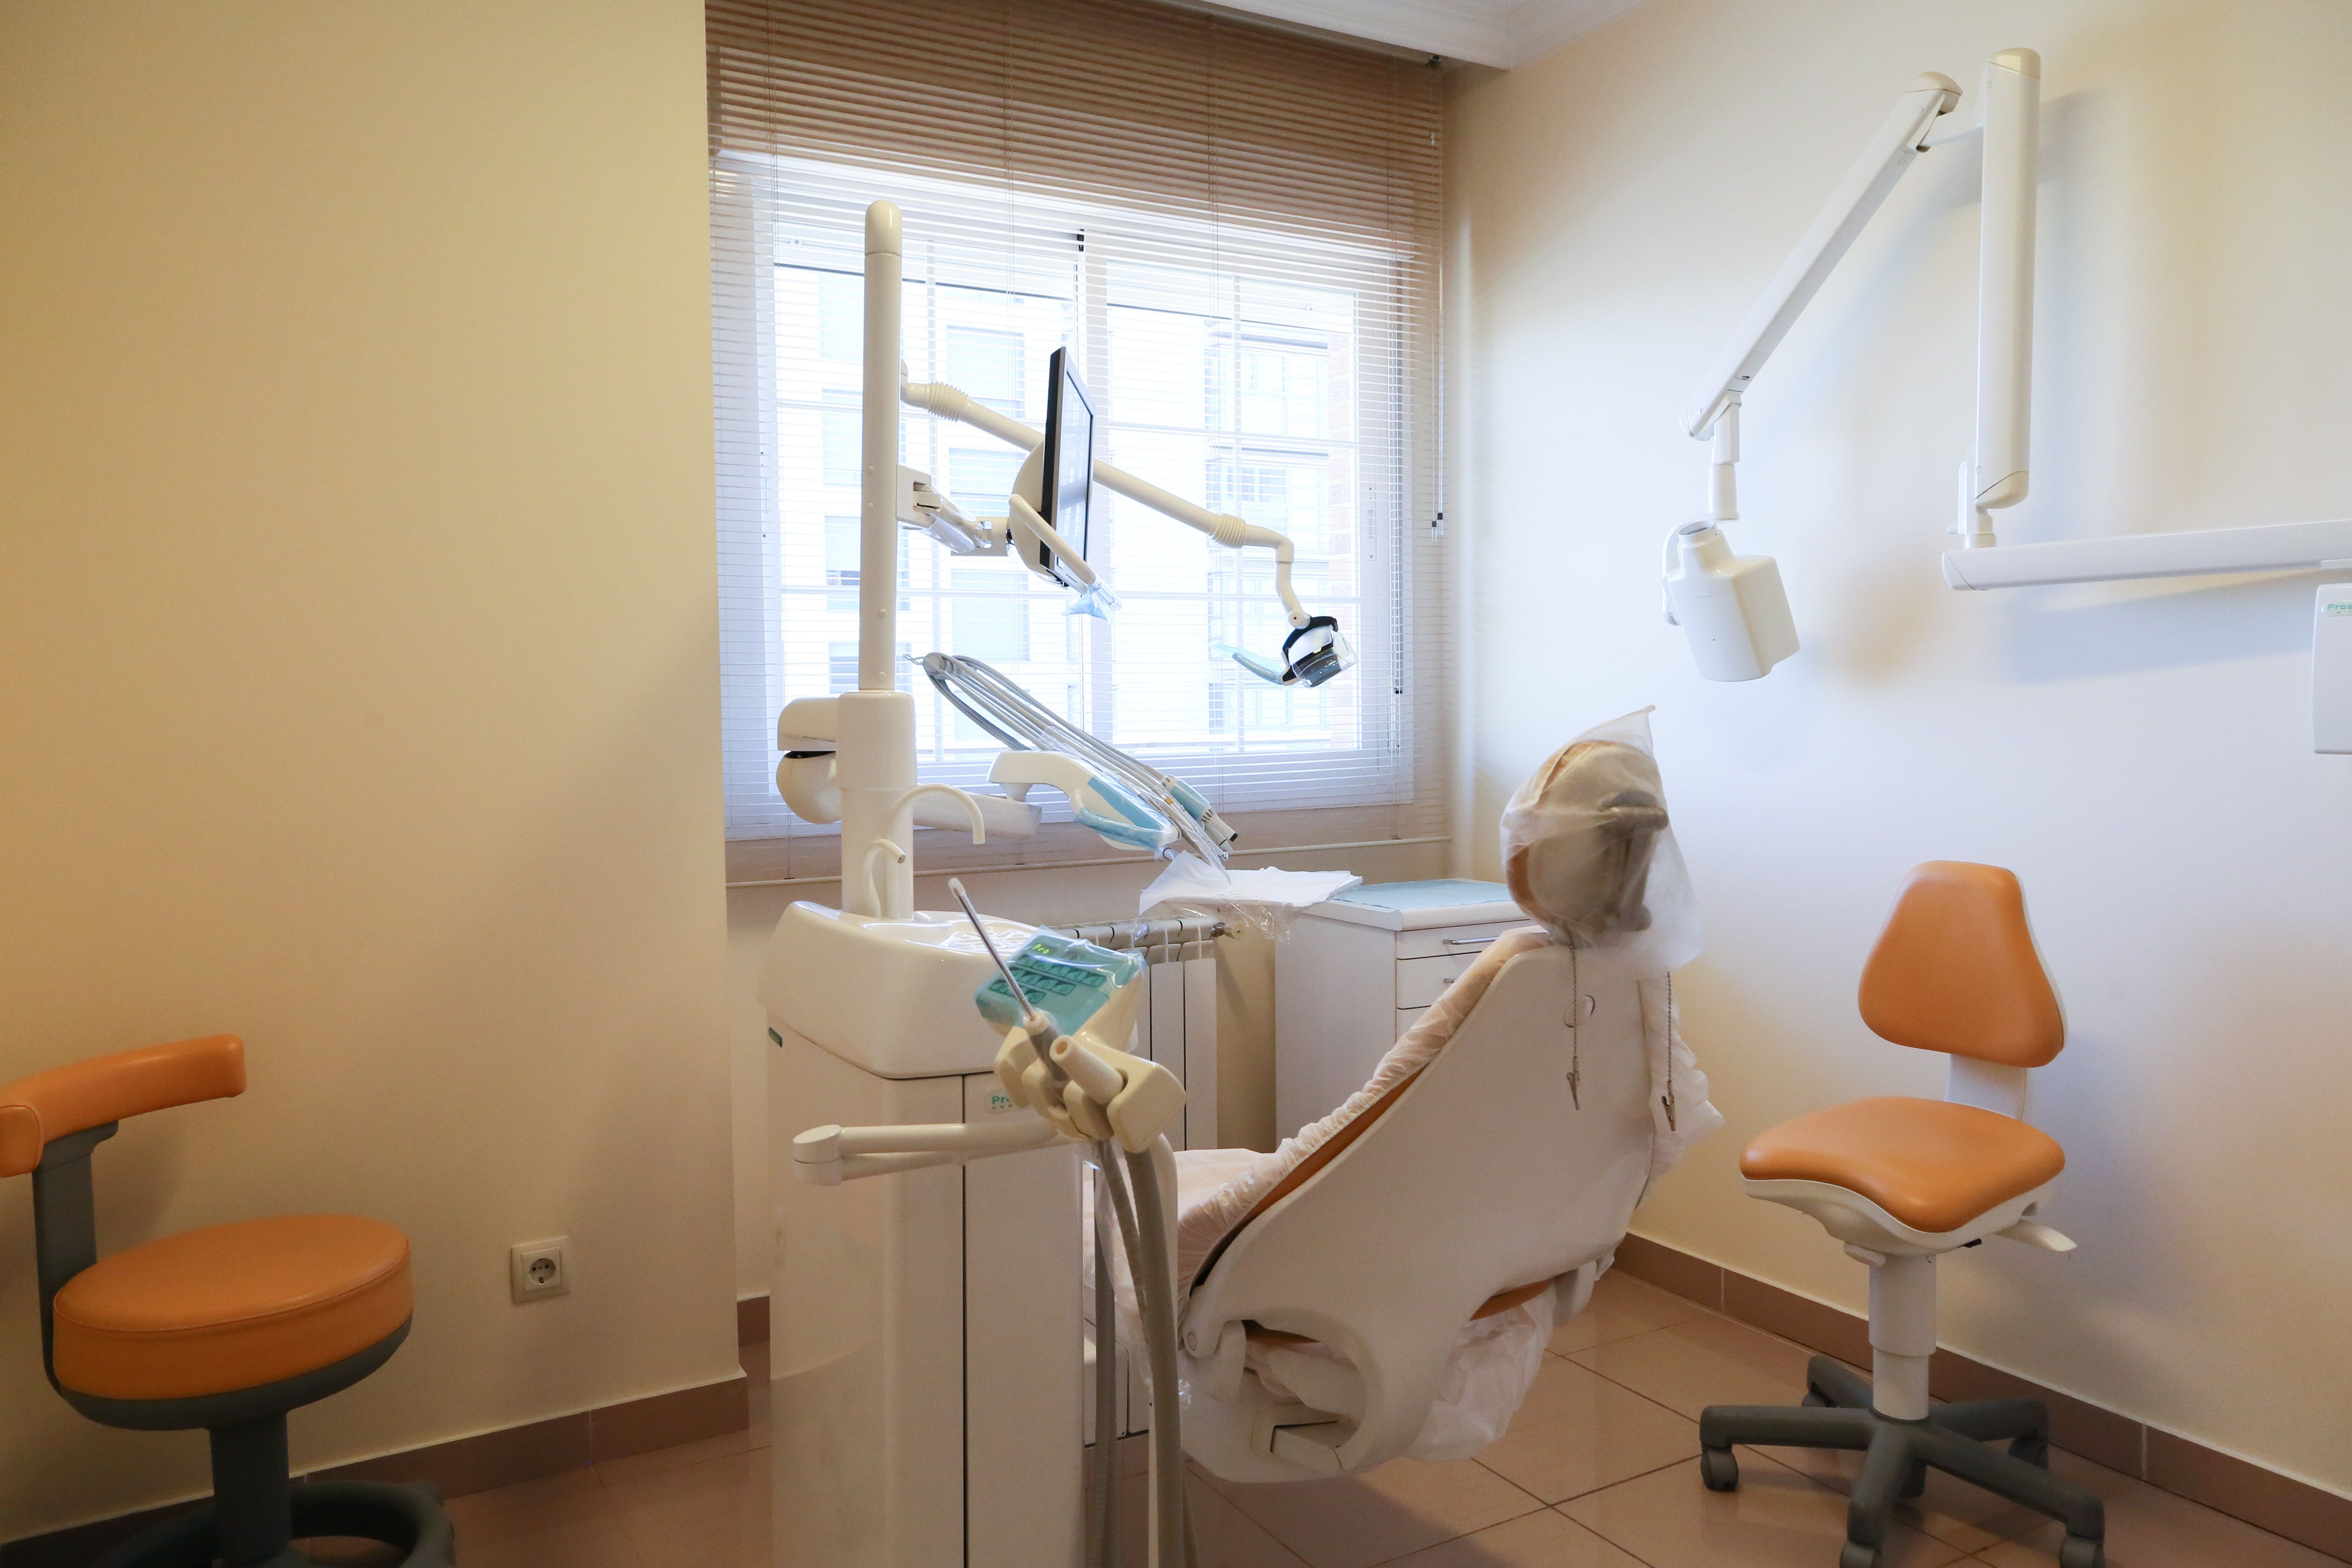 Foto 16 de Dentistas en Madrid | Clínica Dental Dra. Consuelo Zaballa